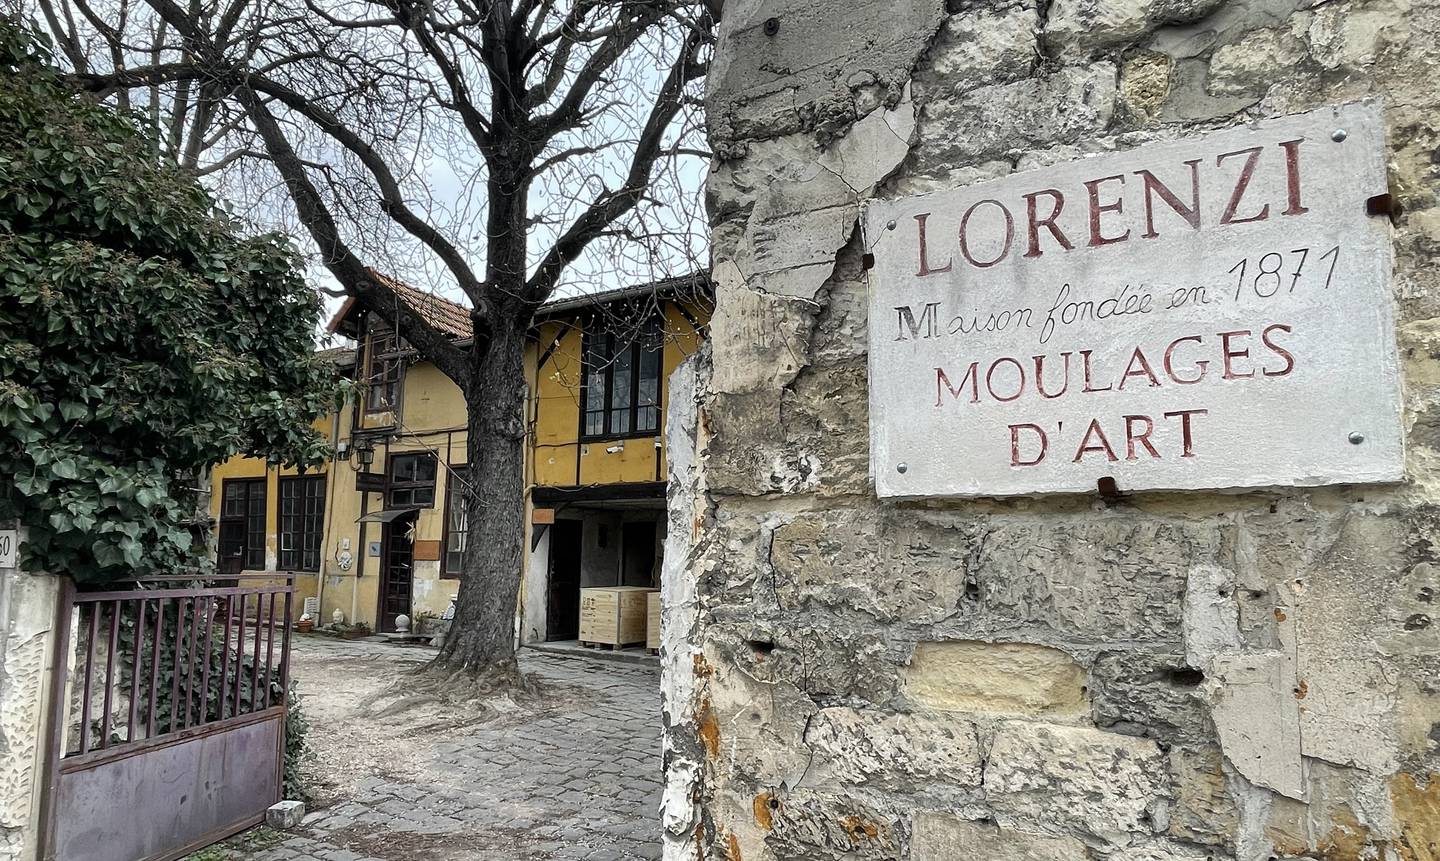 Siden 1944 har Atelier Lorenzi holdt til i en gul murgård i forstaden Arcueil, fem kilometer rett sør for sentrum av Paris. Det 150 år gamle kunststudioet har det som regnes som den første avstøpningen av den ukjente kvinnen fra Seinen.